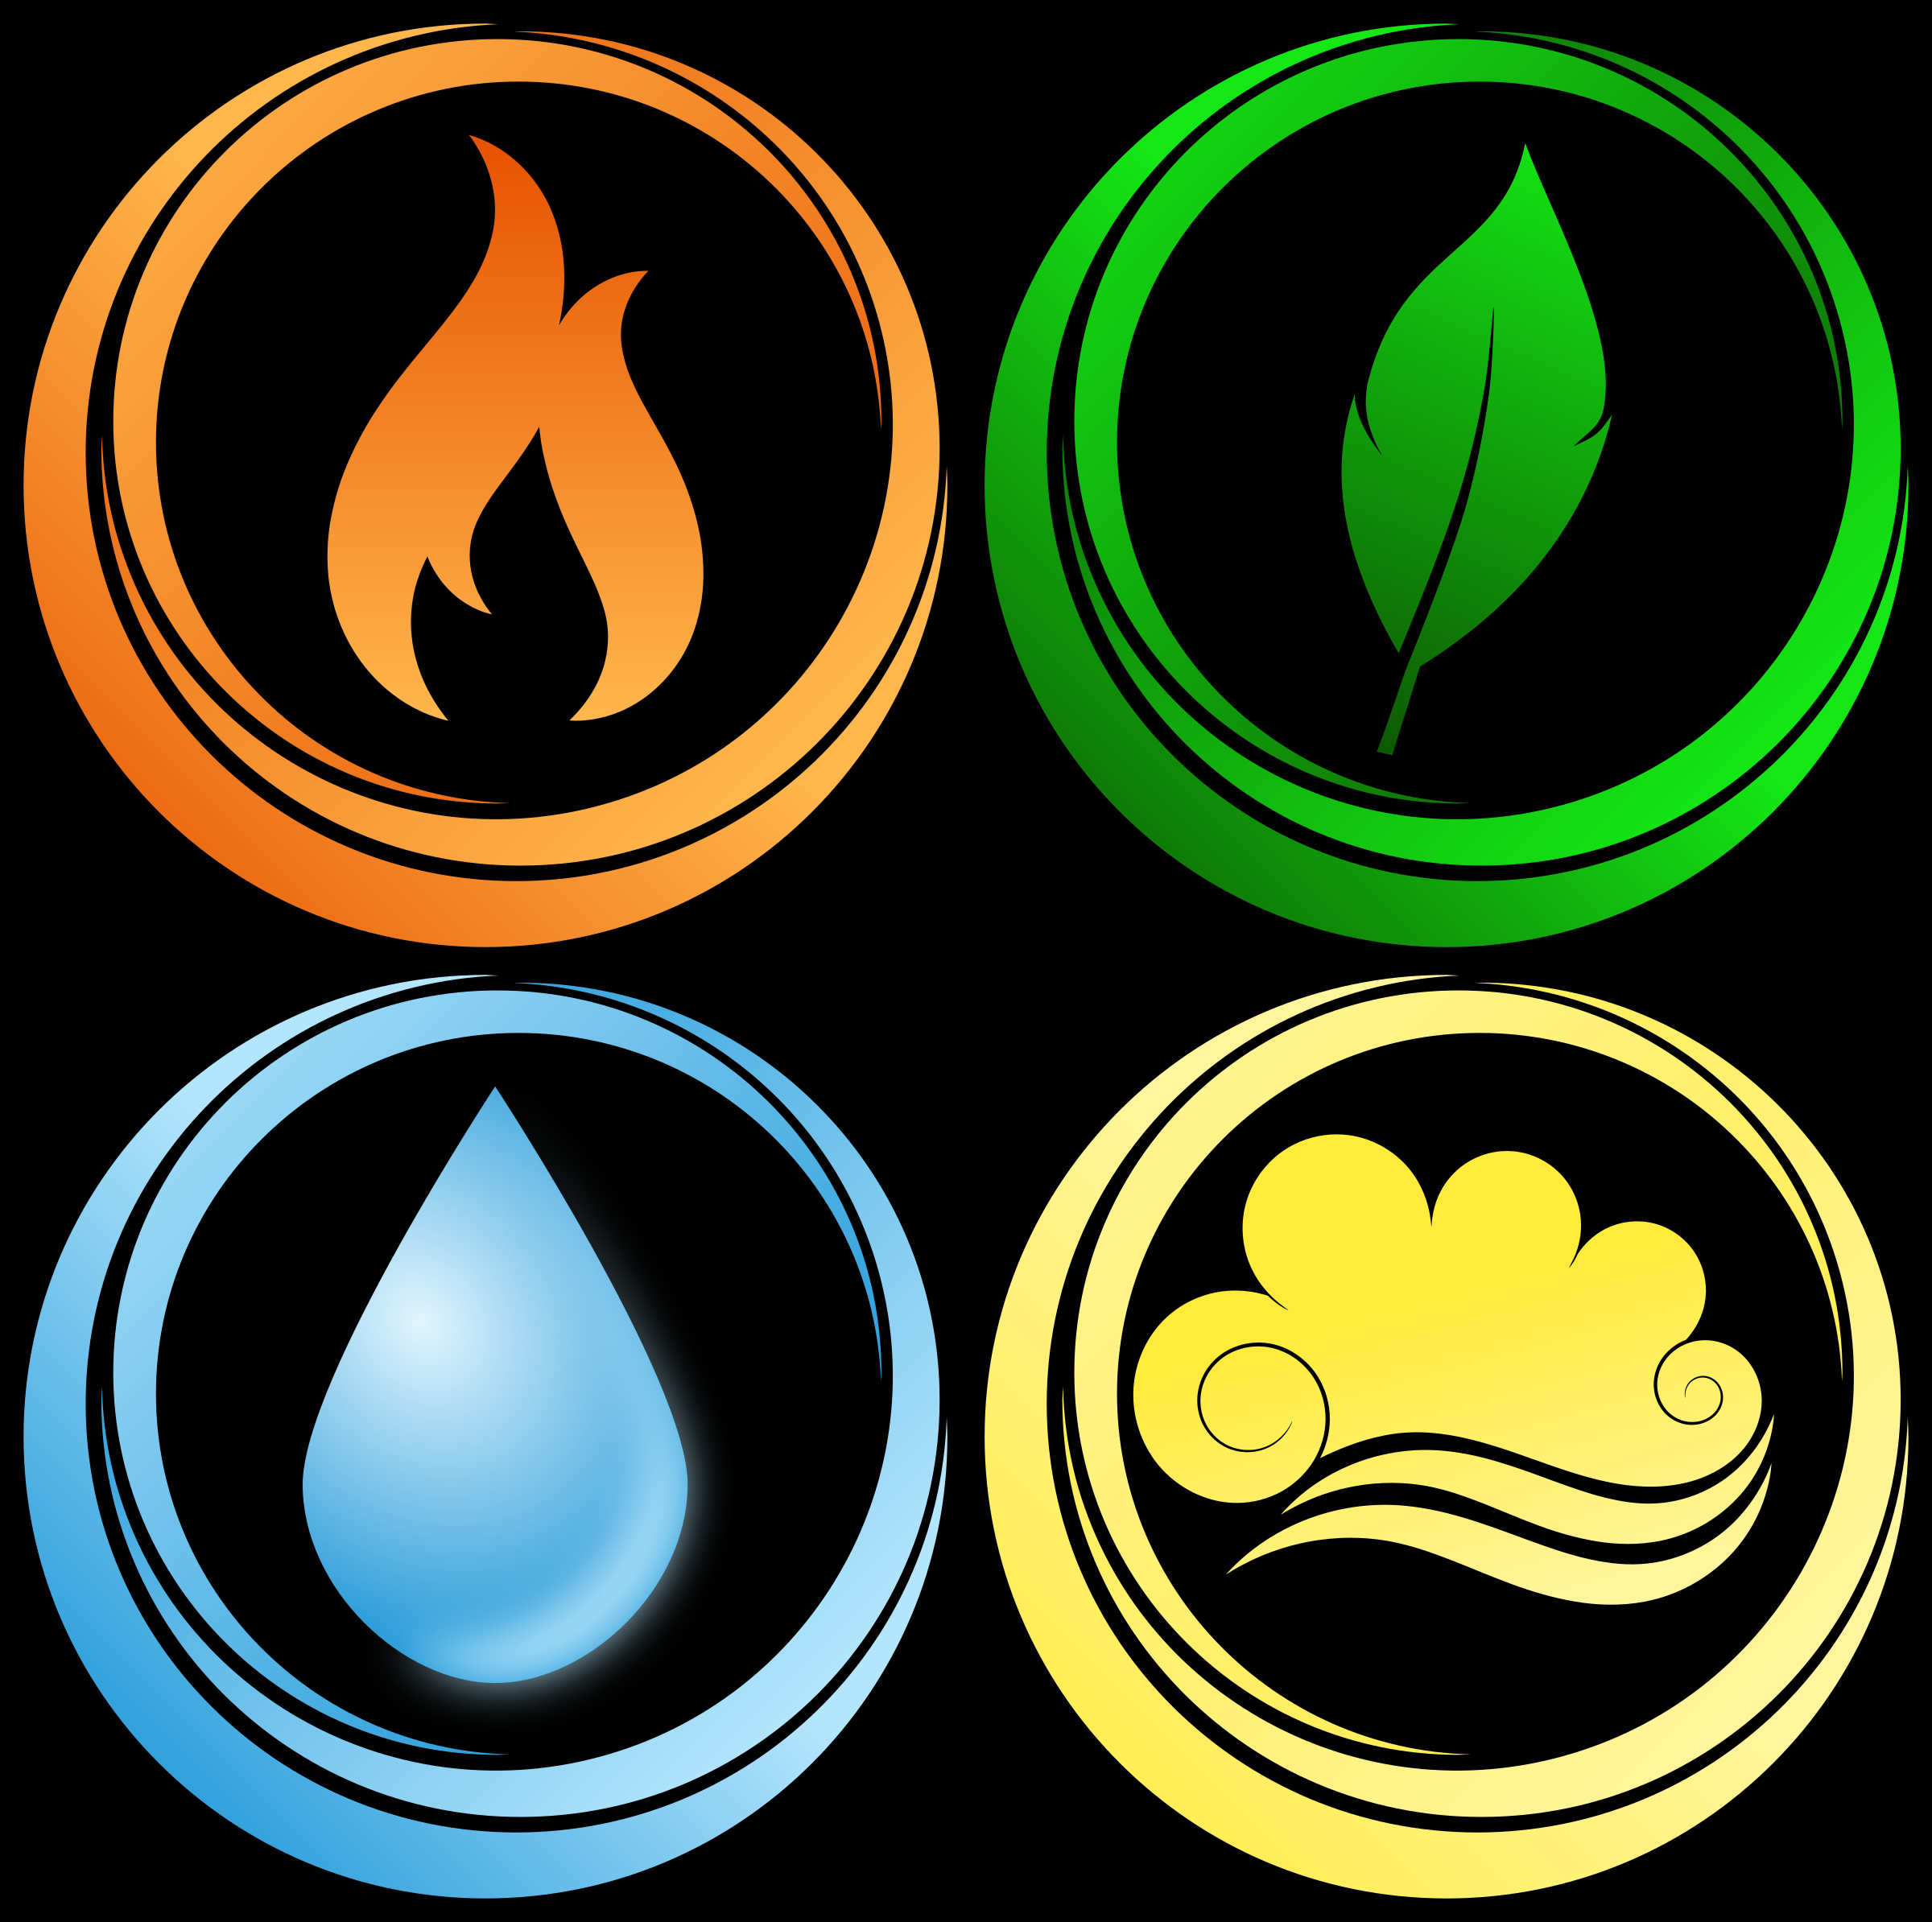 Элементы воды воздуха земли огня